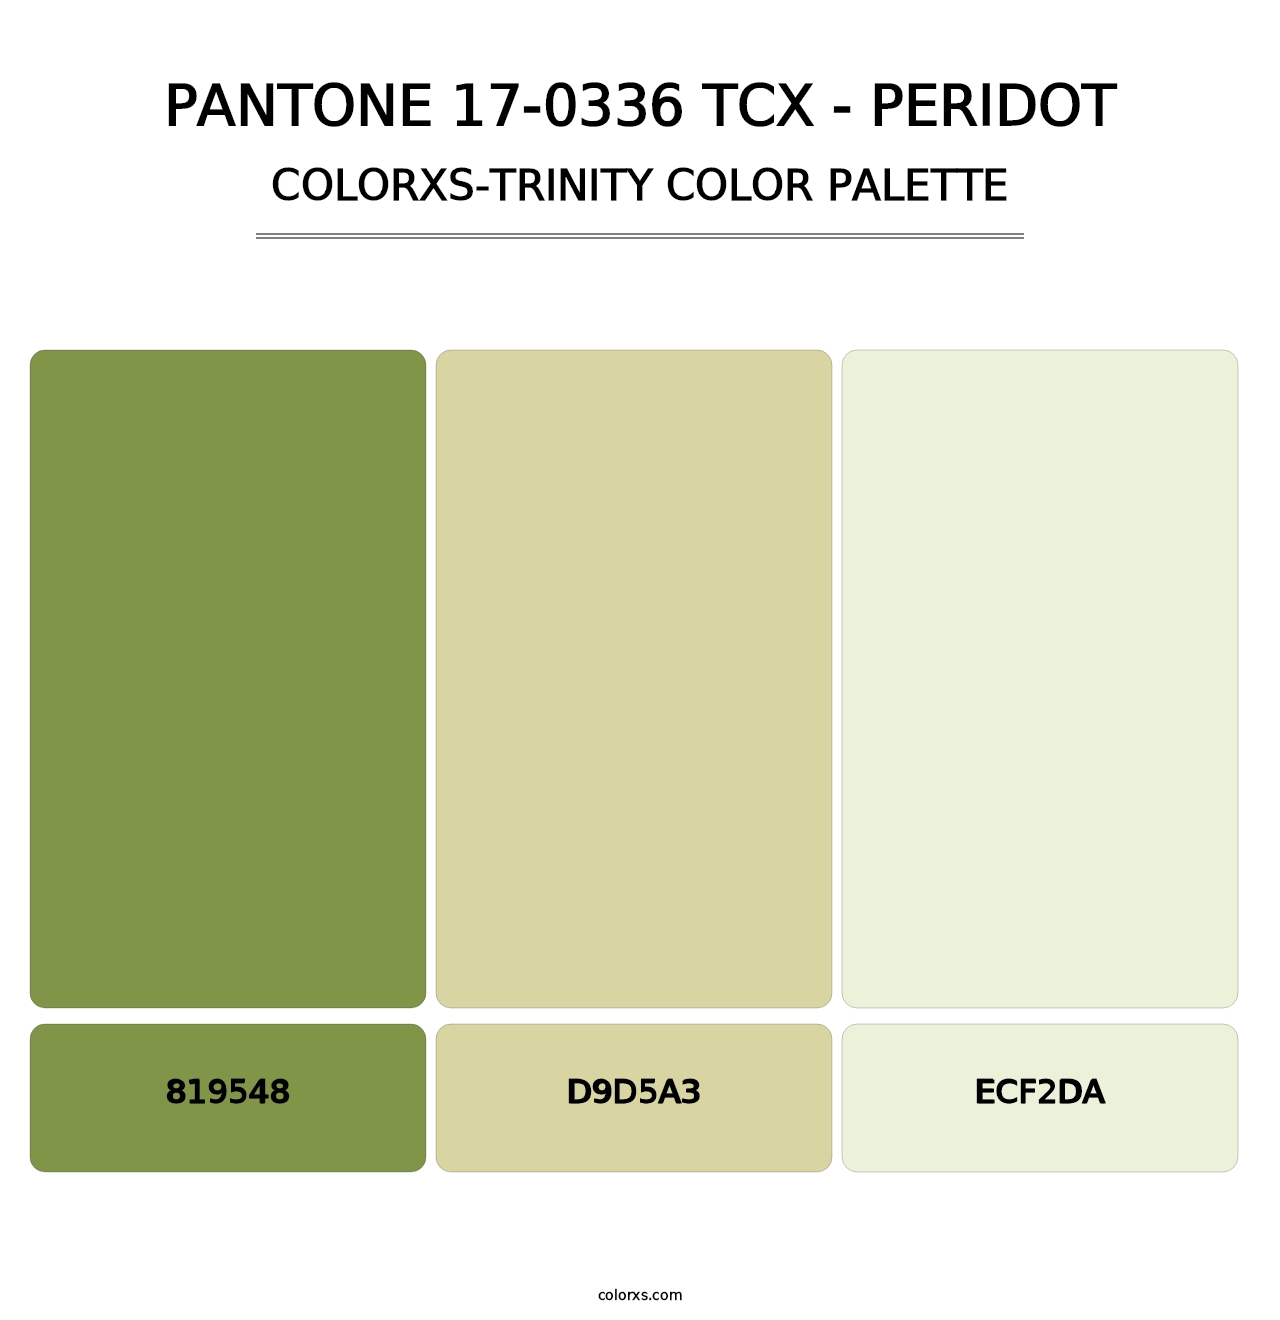 PANTONE 17-0336 TCX - Peridot - Colorxs Trinity Palette